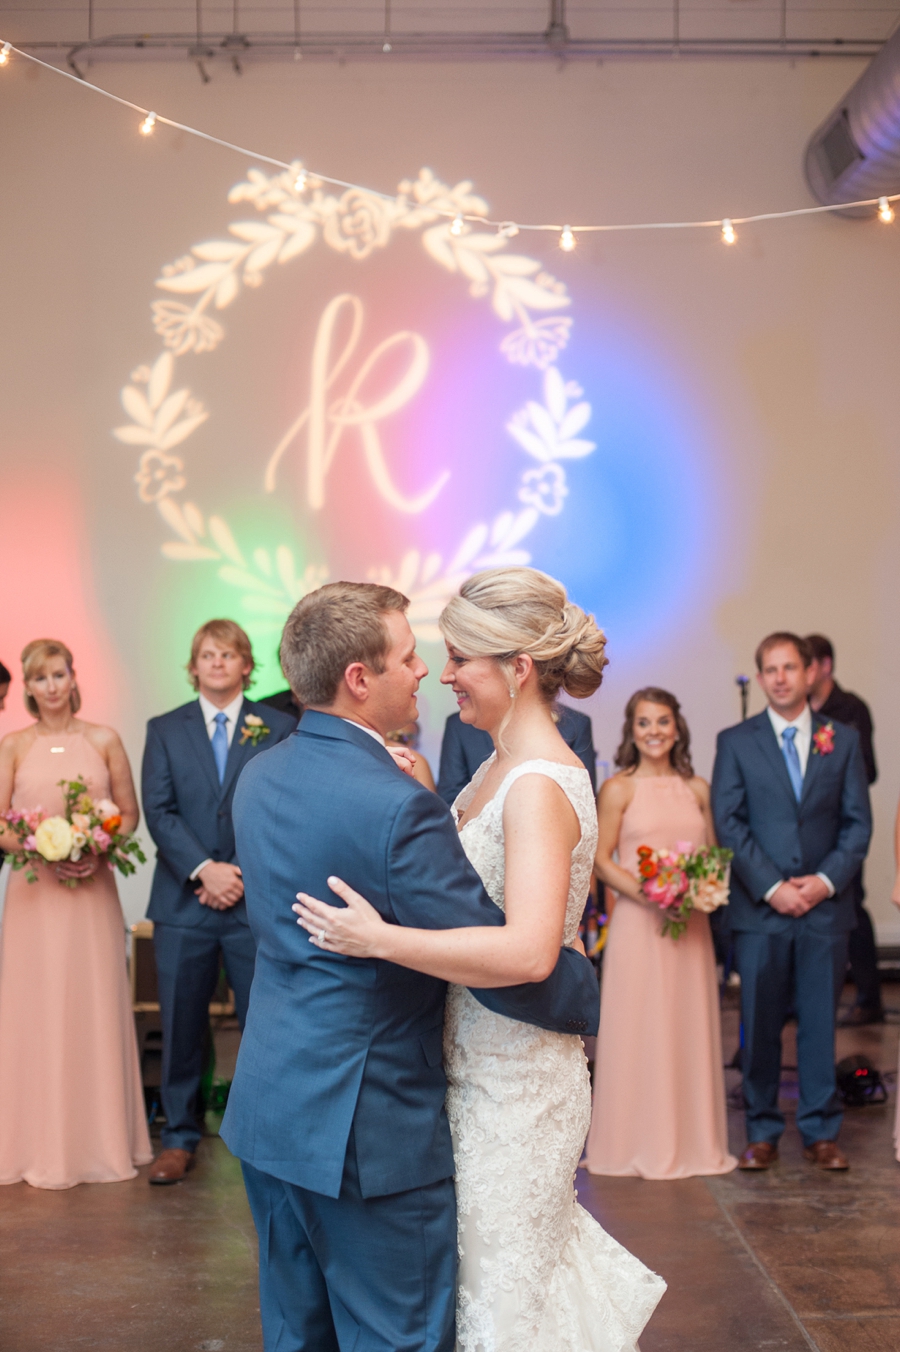 A Romantic Pink South Carolina Wedding via TheELD.com